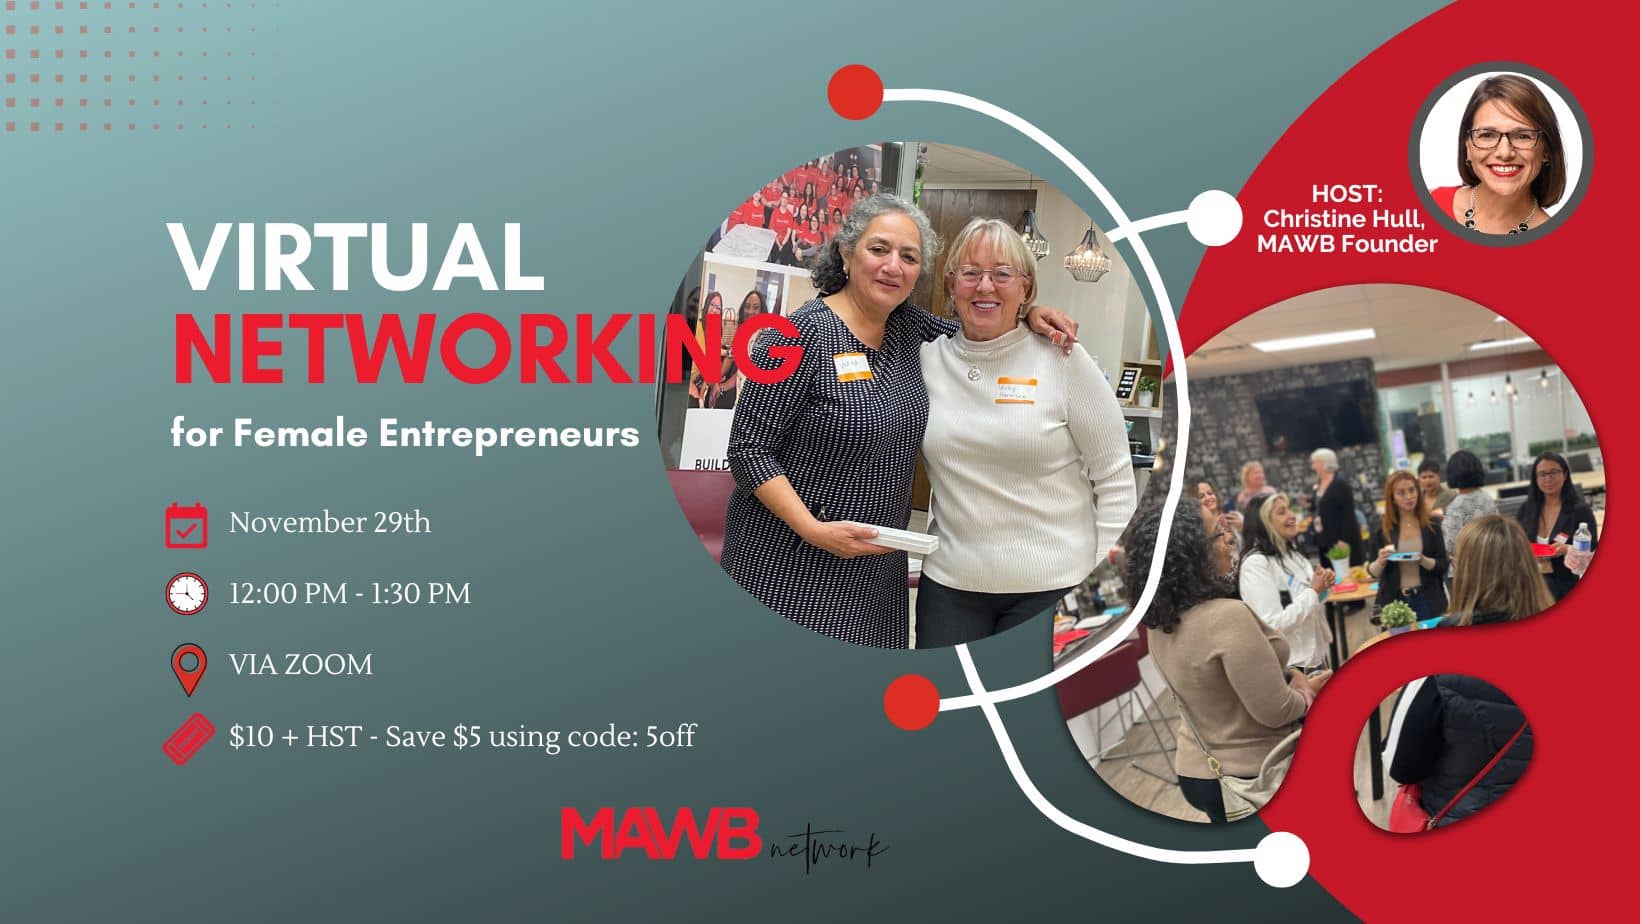 Virtual Networking for Female Entrepreneurs on November 29th